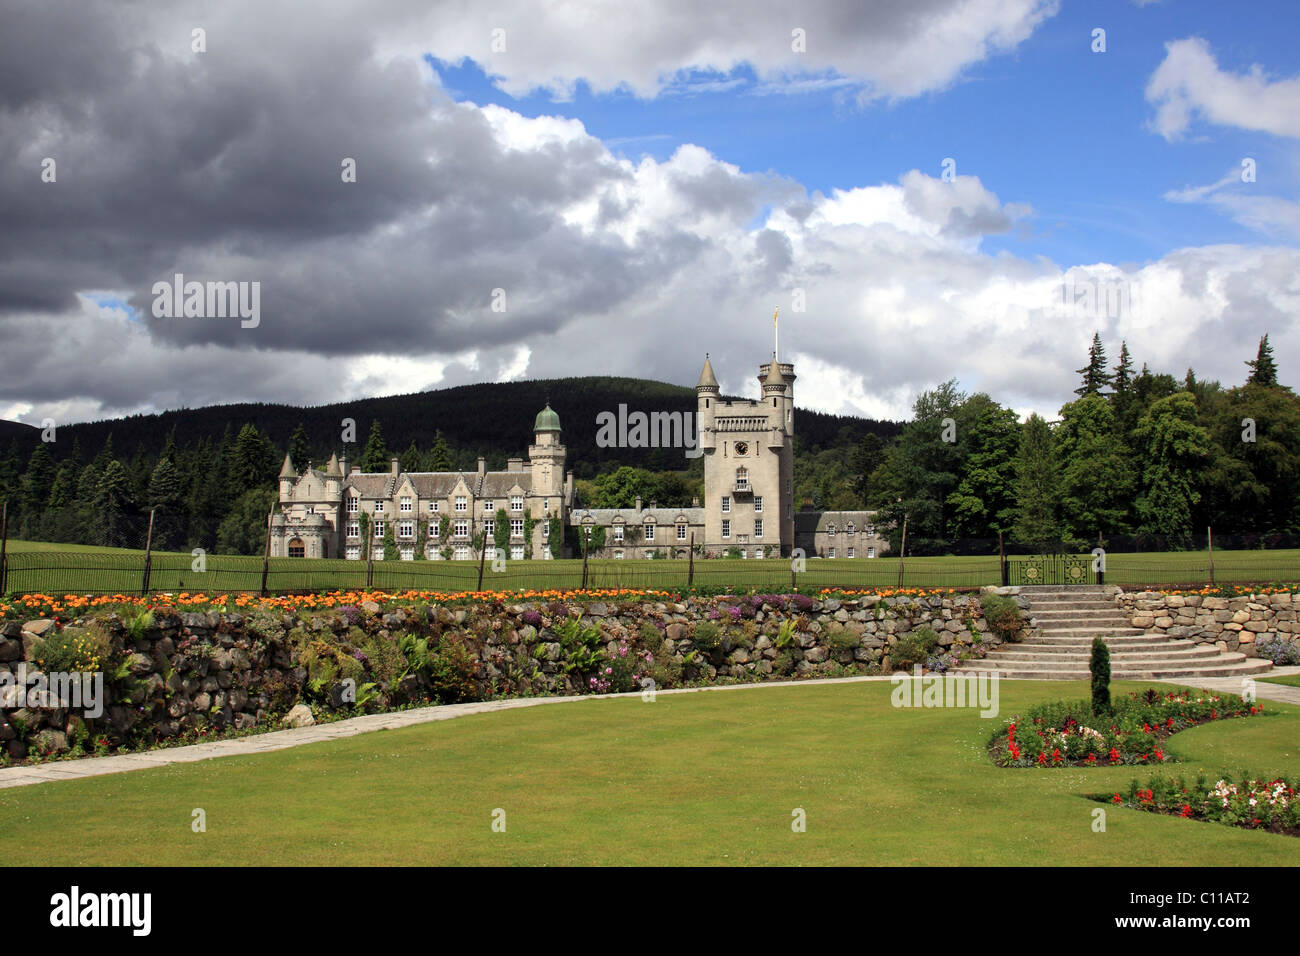 El castillo de Balmoral, residencia de verano de la familia real británica, Scotland, Reino Unido, Europa Foto de stock